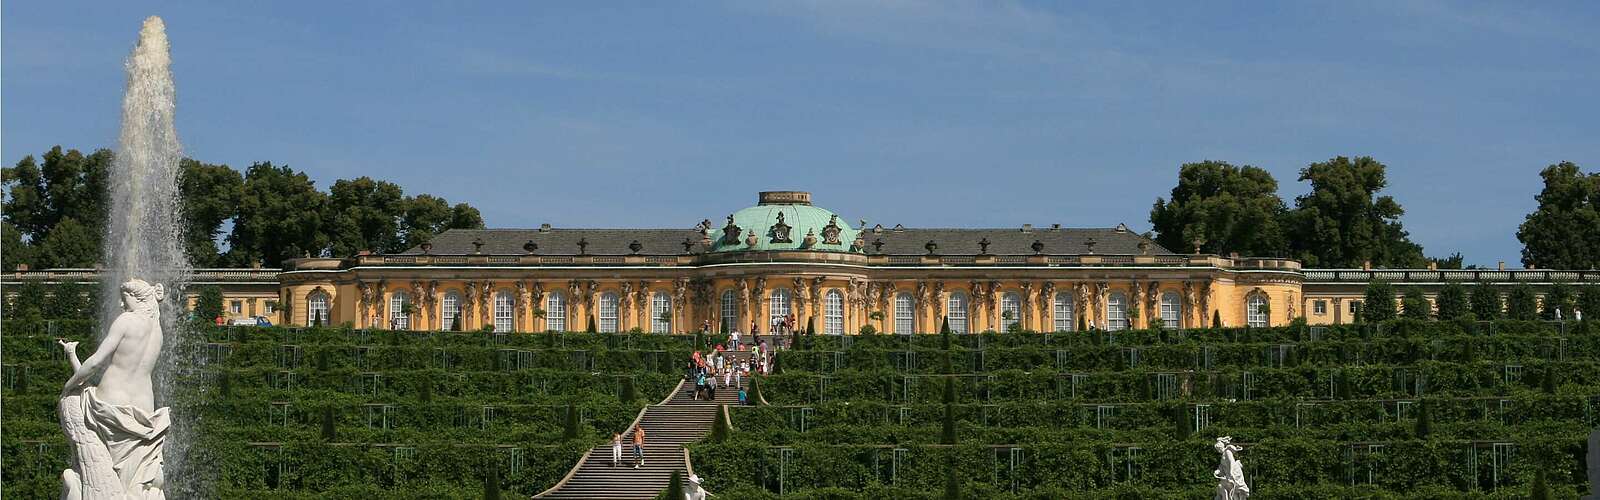 Schloss Sanssouci mit Weinbergterrassen,
        
    

        Picture: TMB-Fotoarchiv/SPSG/Steffen Lehmann